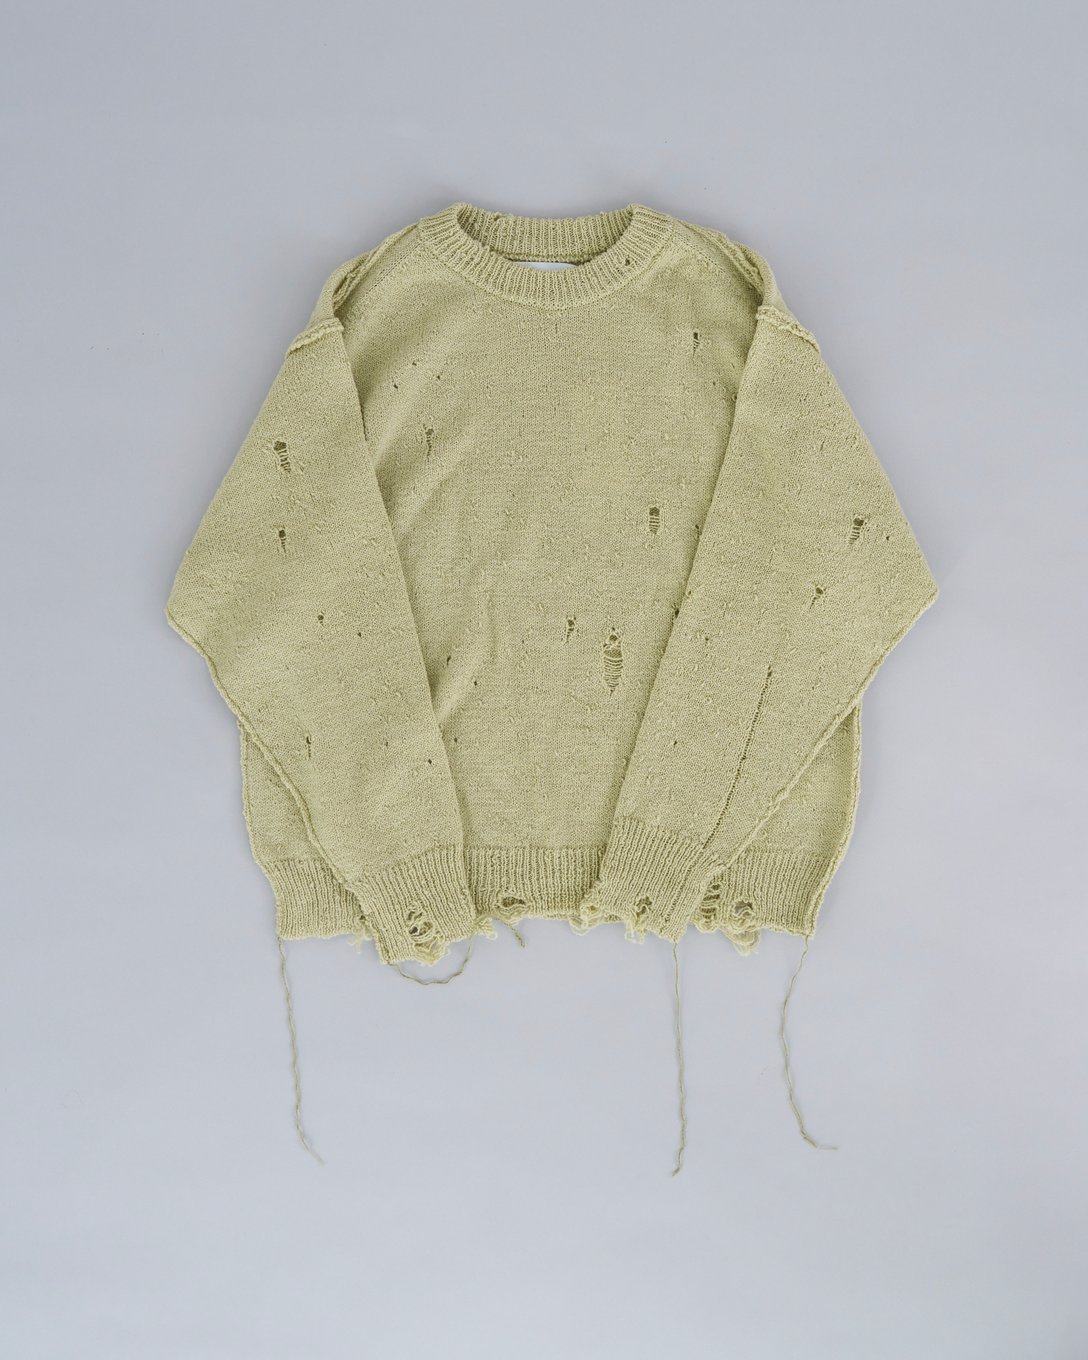 イエローカラーのダメージデザインの効いたセーター